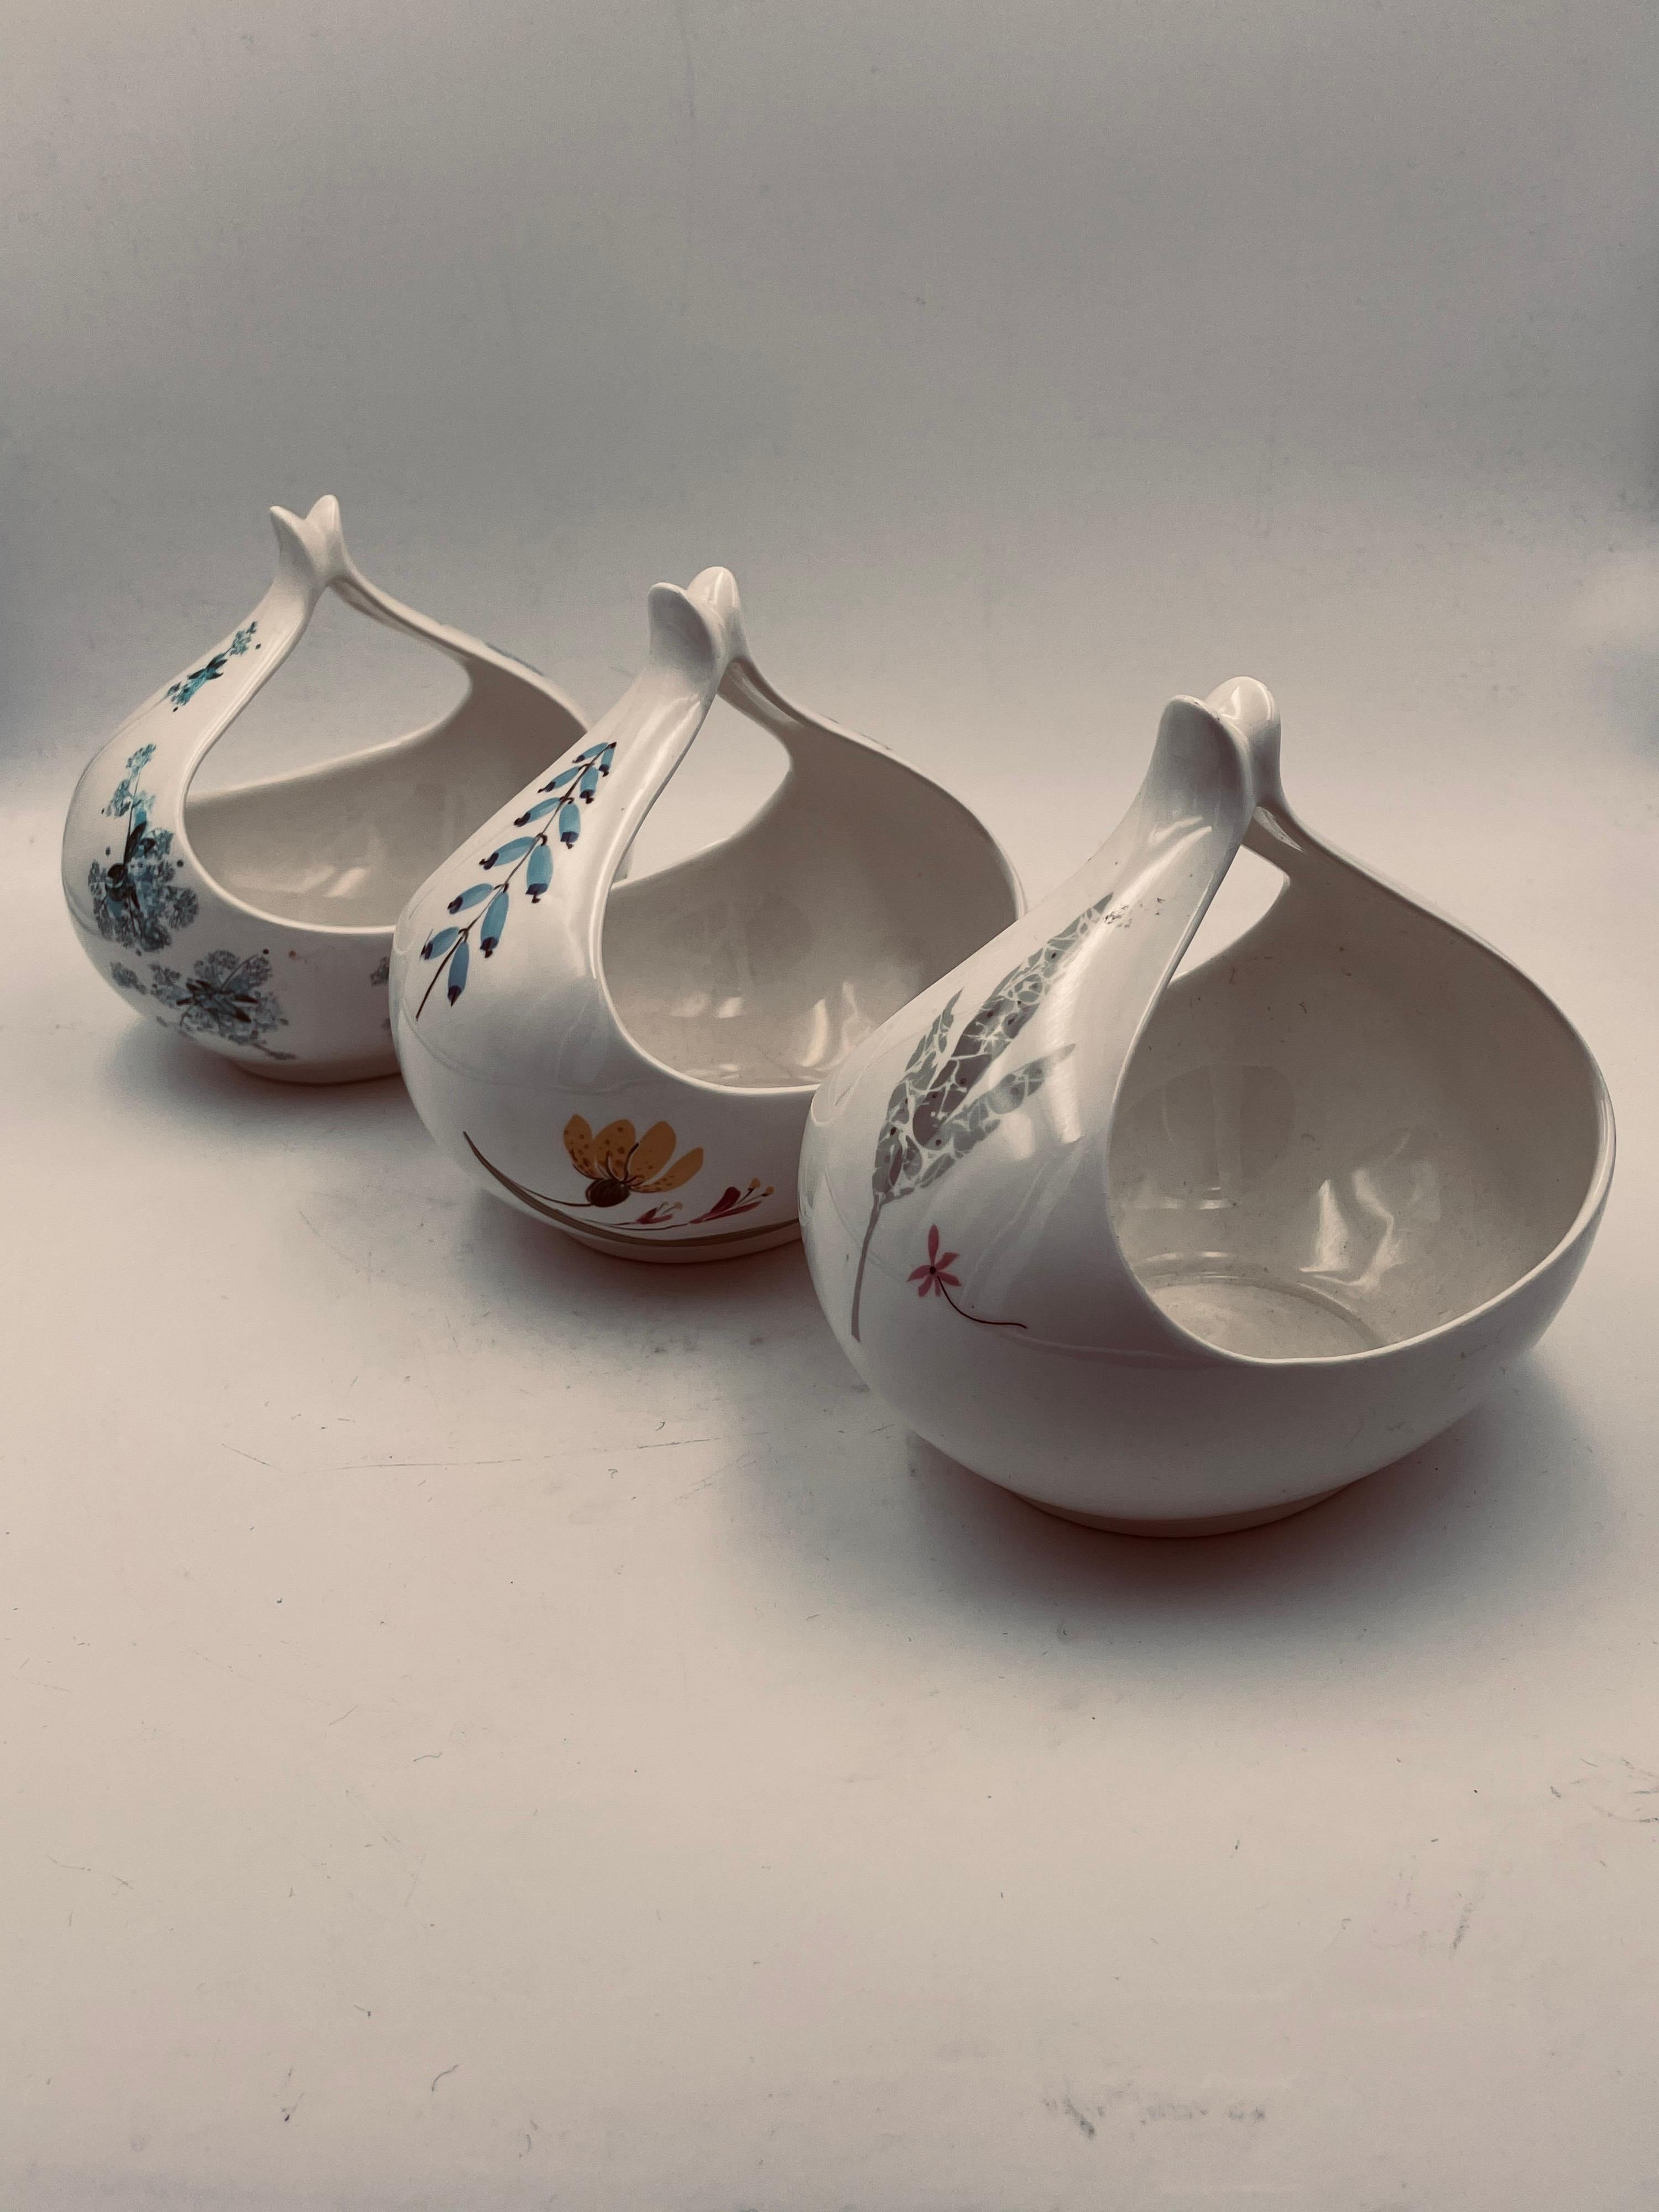 Magnifique design et impressions, par Eva Zeisel pour Condit. Les bols en porcelaine peuvent être vendus séparément, l'acheteur peut en acheter 1, 2 ou 3 en très bon état, sans ébréchures ni fissures.